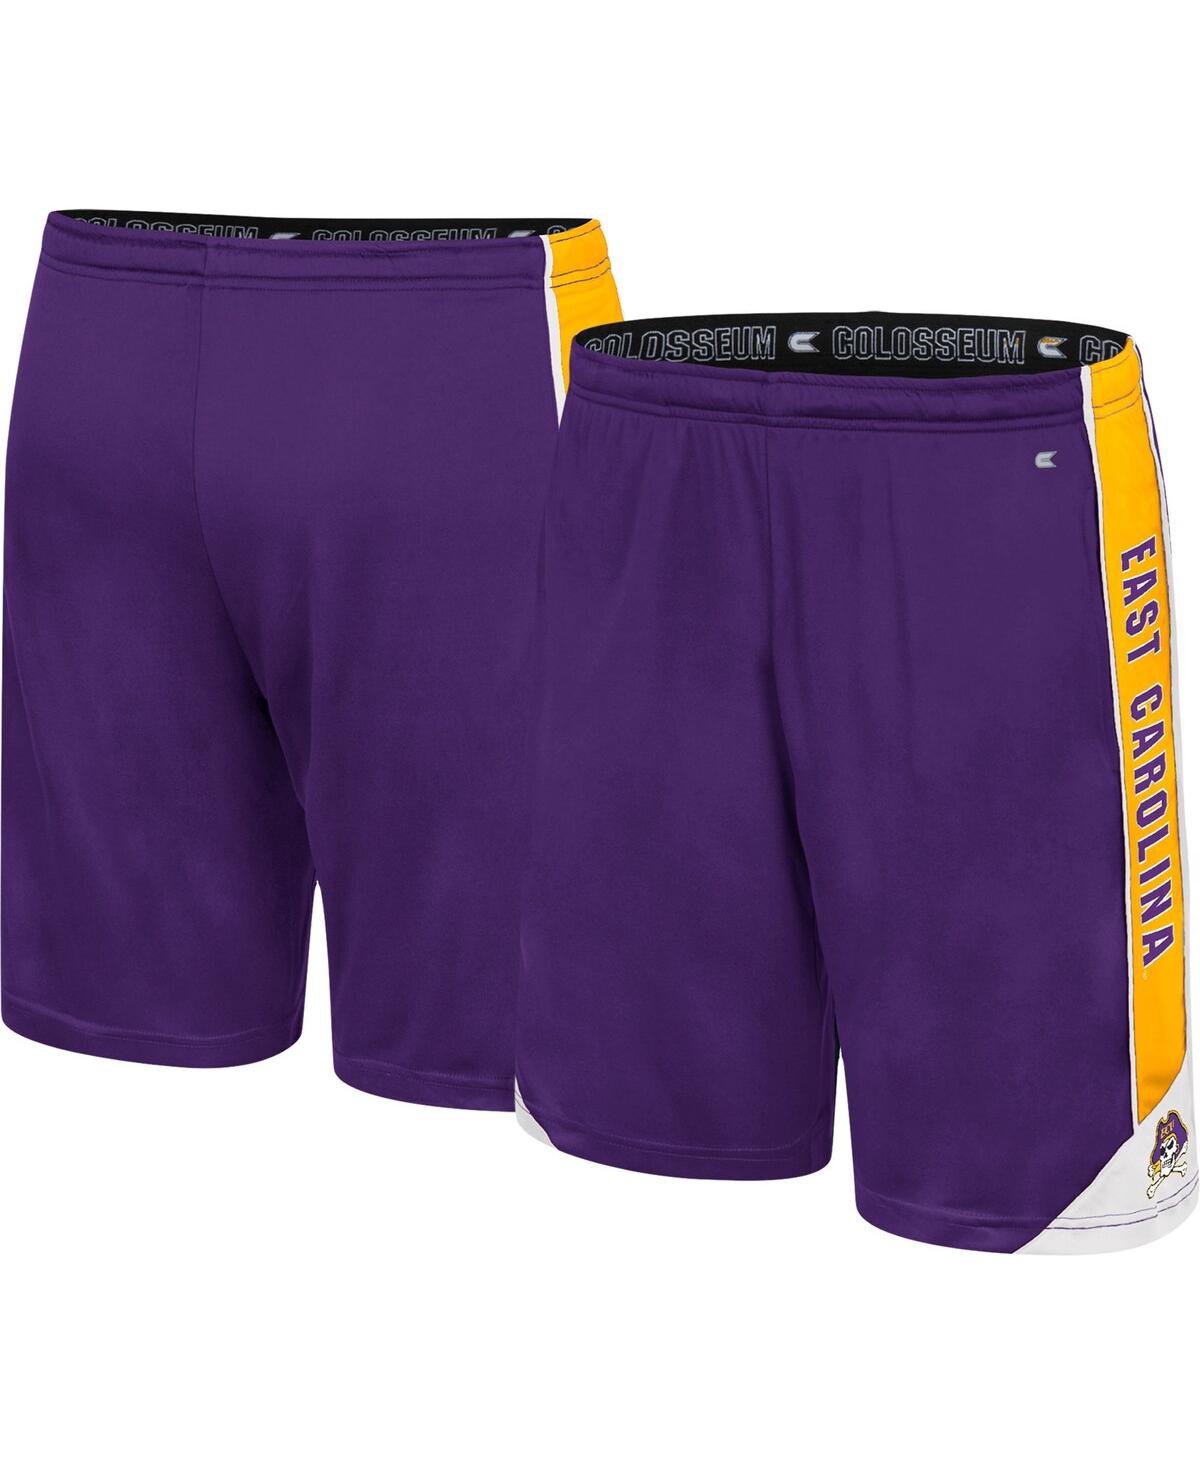 Shop Colosseum Men's  Purple Ecu Pirates Haller Shorts